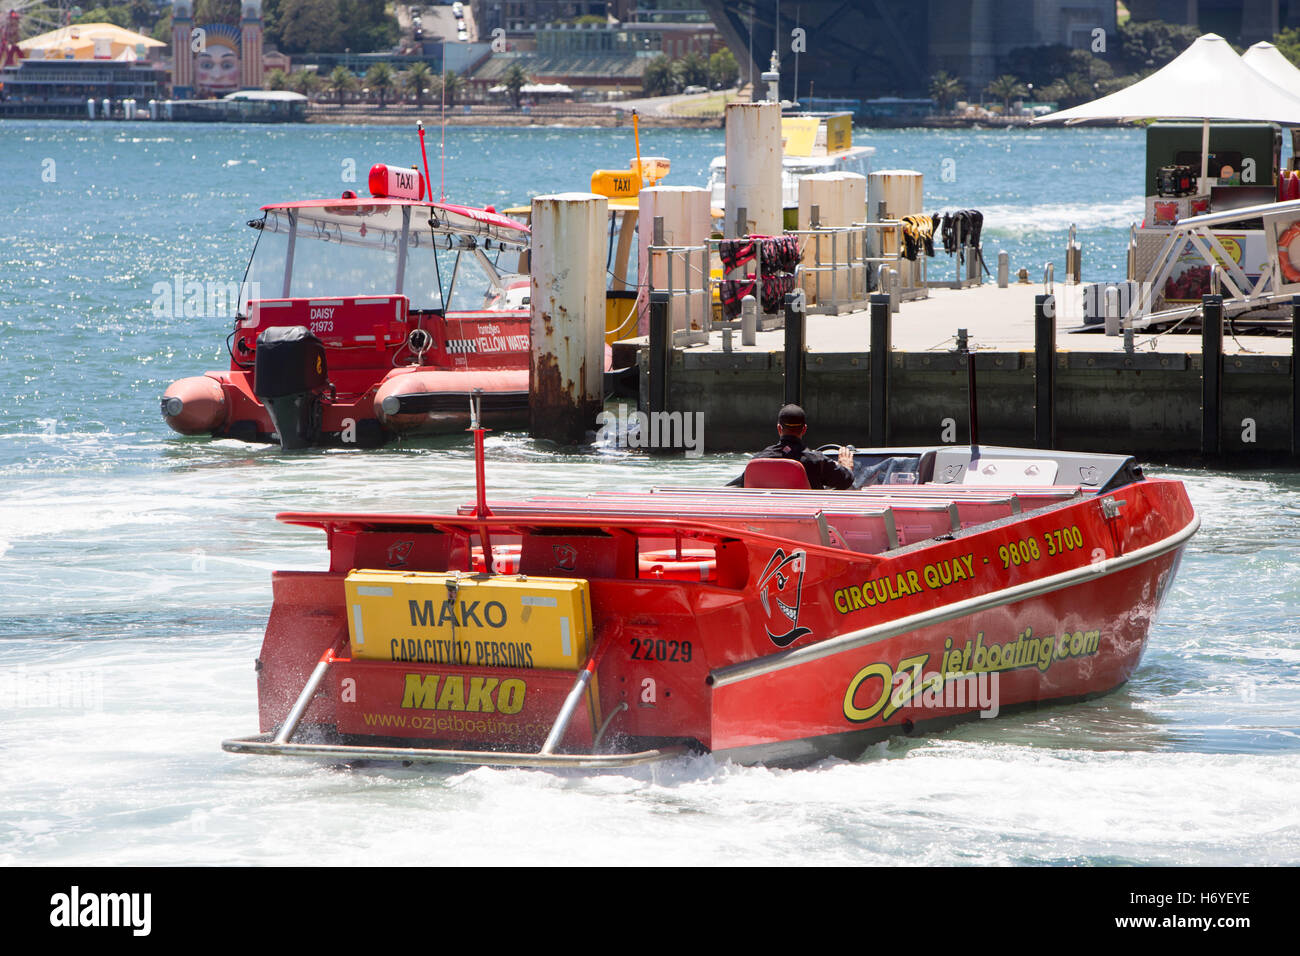 Oz velocità jet jetboating sul porto di Sydney al Circular Quay di Sydney, Australia Foto Stock